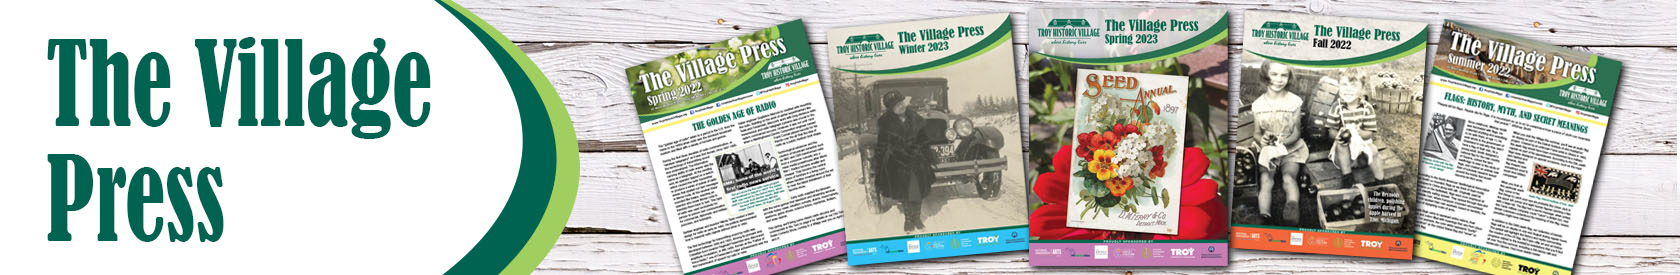 Village Press Newsletter